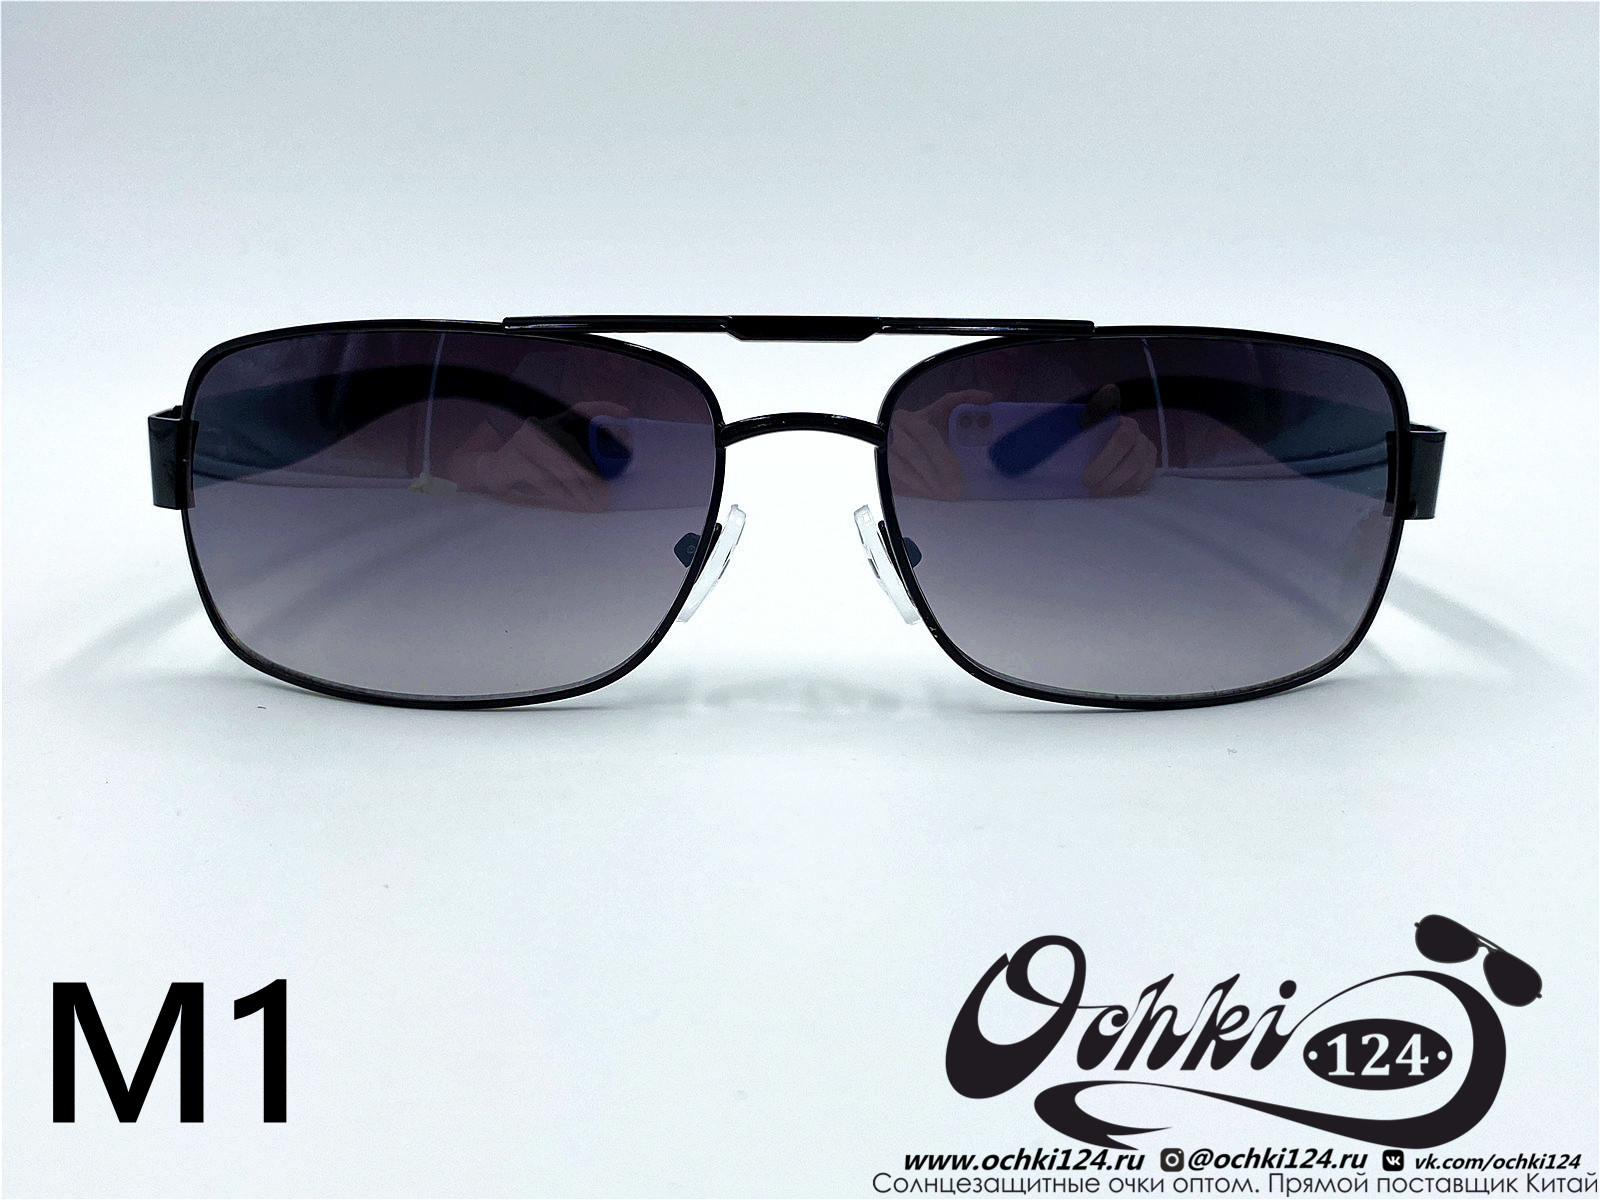  Солнцезащитные очки картинка 2022 Мужские Узкие и длинные KaiFeng M1-2 